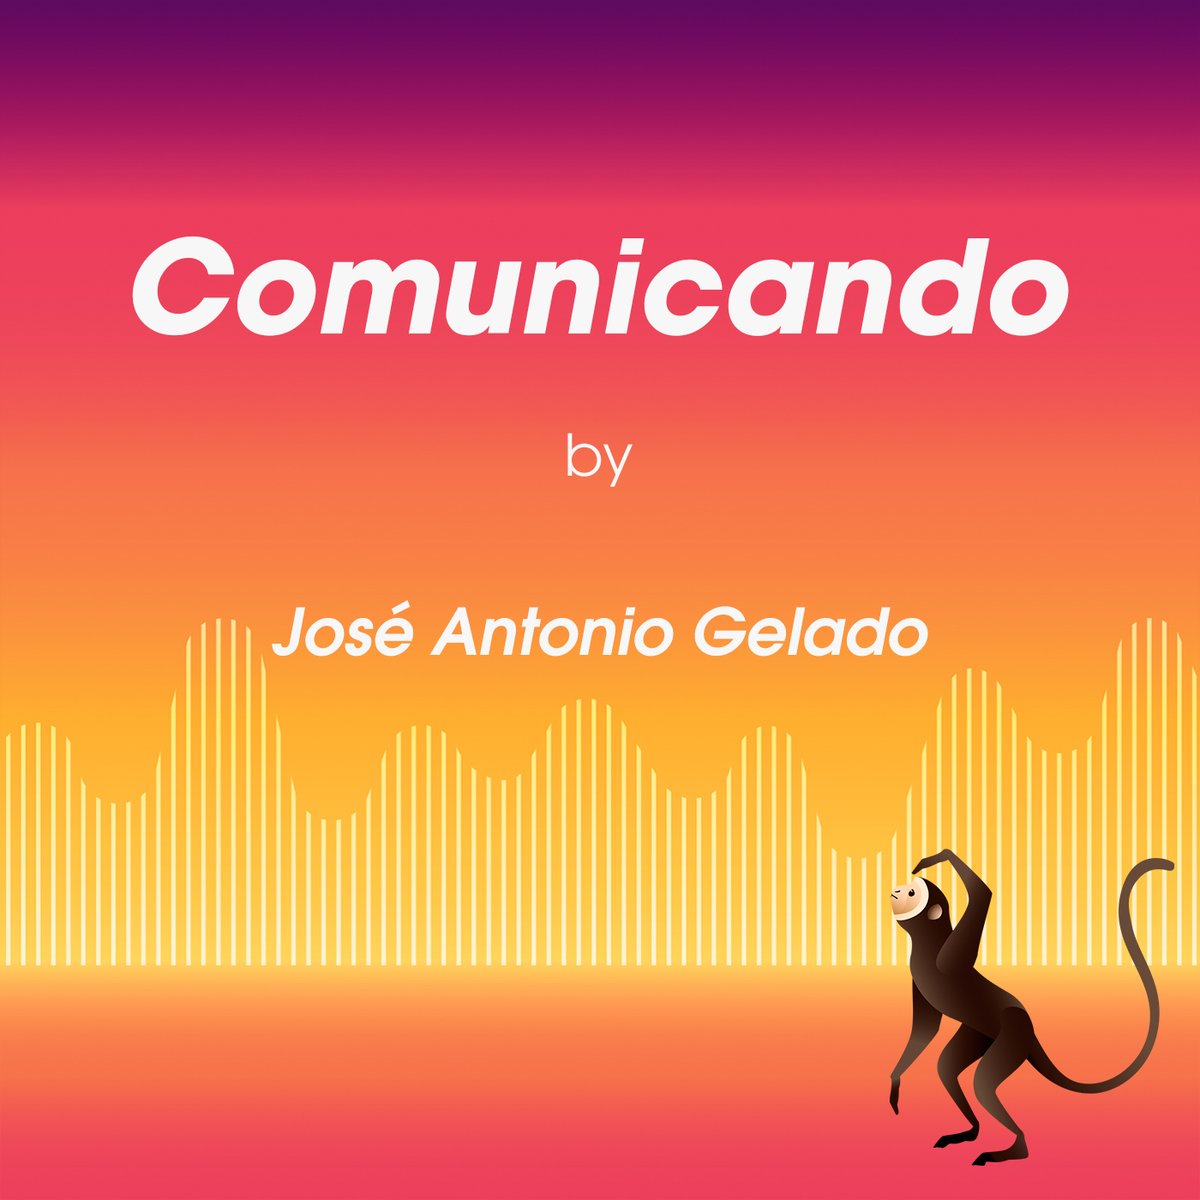 Algunos afirman que el primer podcast en Español, acuñando el término, fue Comunicando. Hace ya bastante tiempo pero ¿tú lo has escuchado?#Madrid #EstacionPodcast #CreacionSonora #Podcast #Podcaster #podcasting